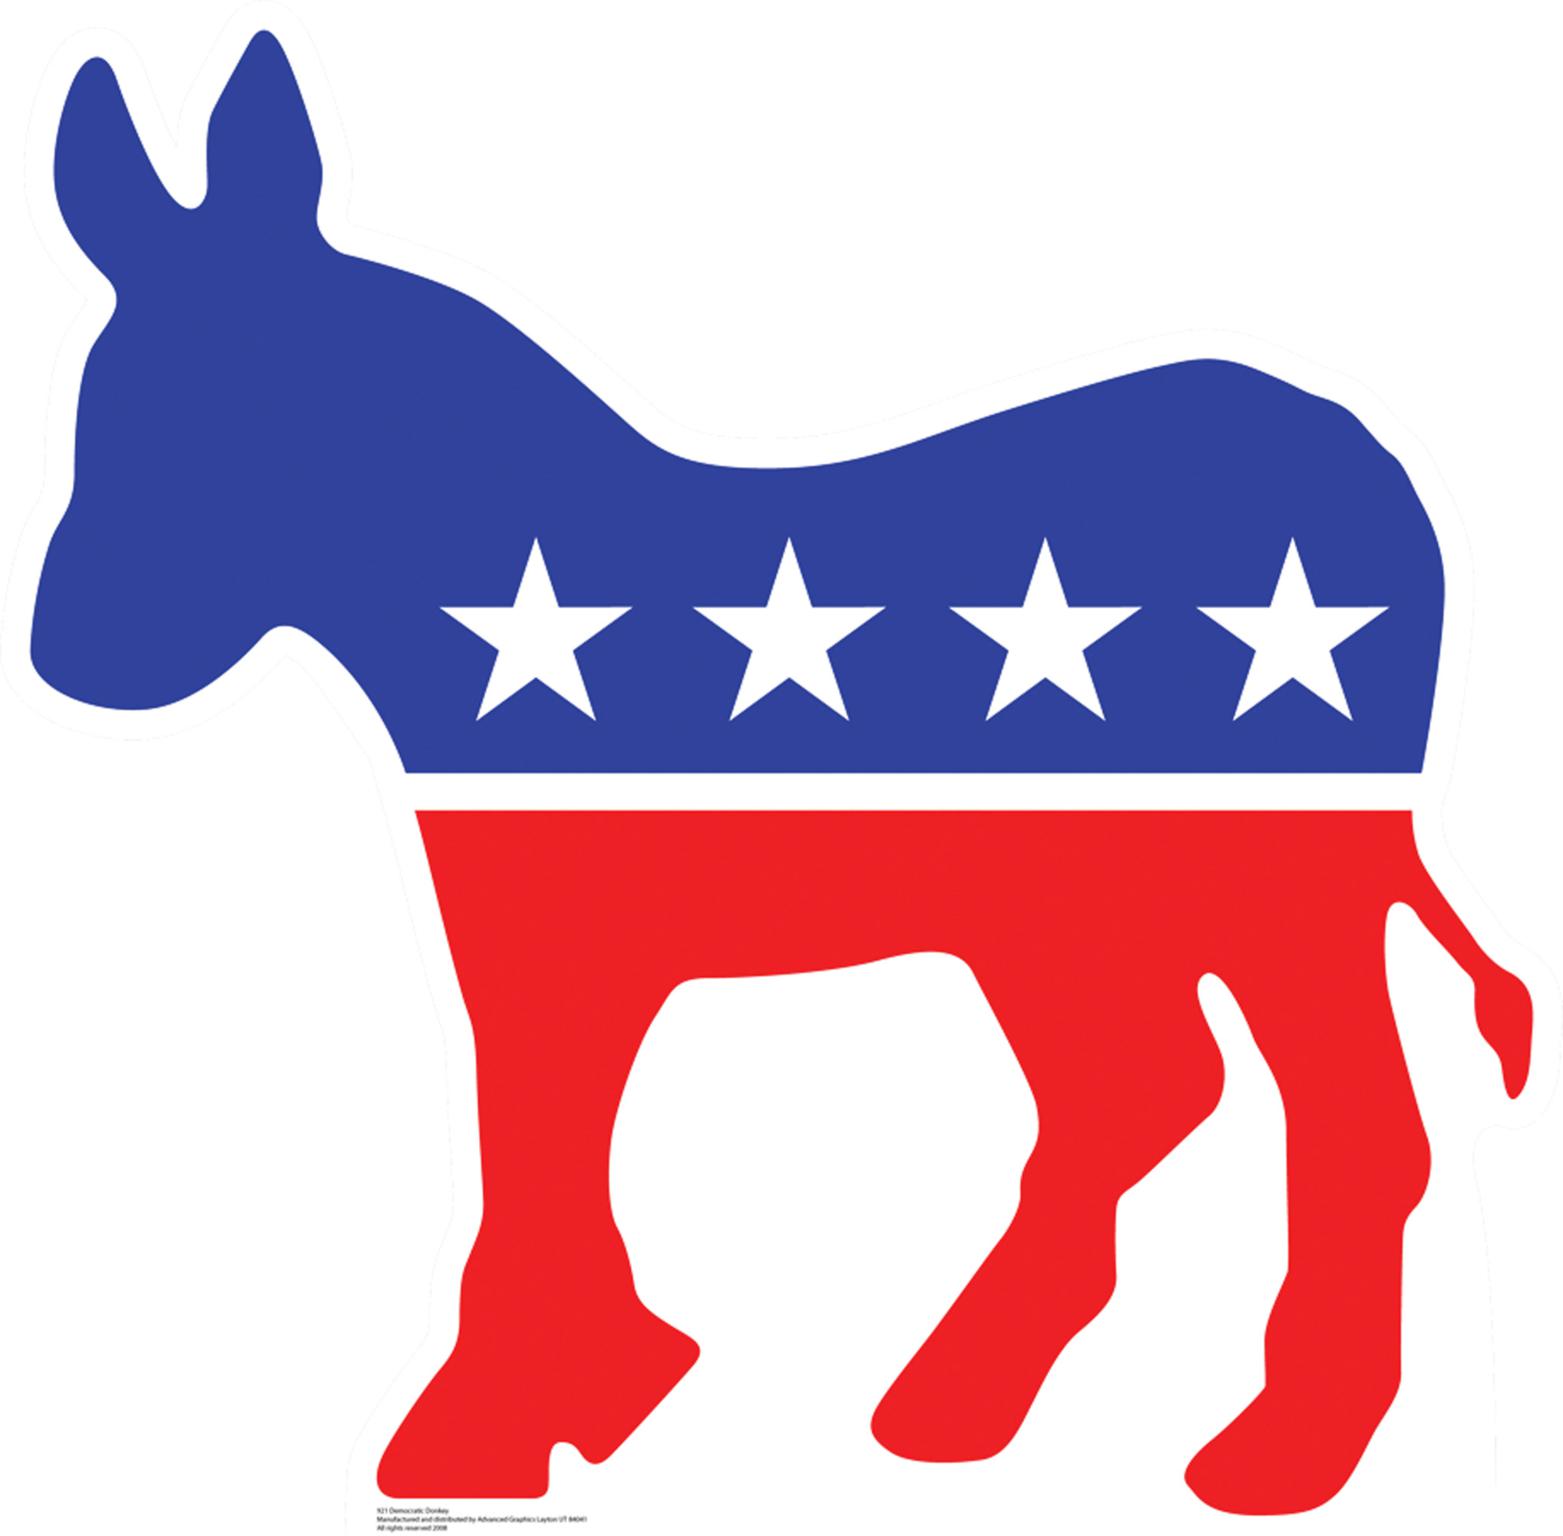 democratic party logo